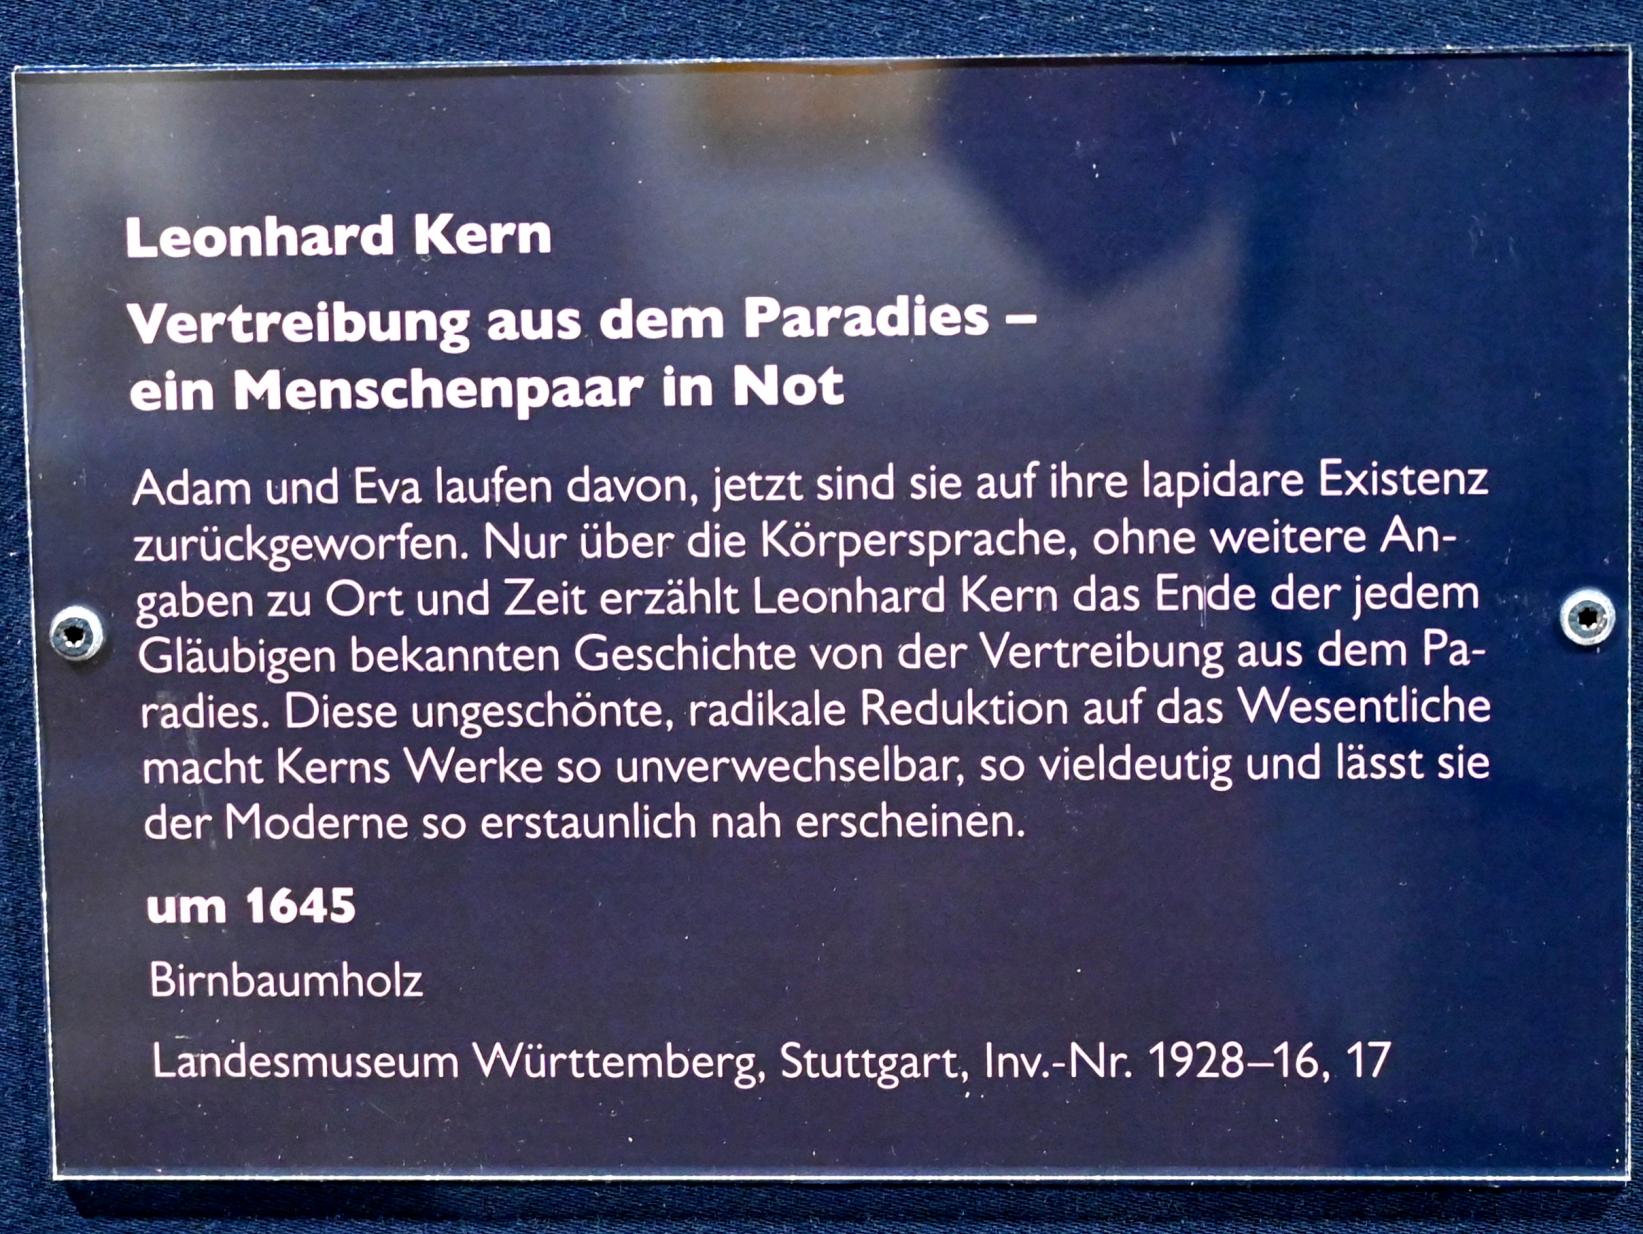 Leonhard Kern (1615–1653), Vertreibung aus dem Paradies - ein Menschenpaar in Not, Schwäbisch Hall, Kunsthalle Würth, Ausstellung "Leonhard Kern und Europa" vom 29.03. - 03.10.2021, Untergeschoß Saal 2, um 1645, Bild 5/5